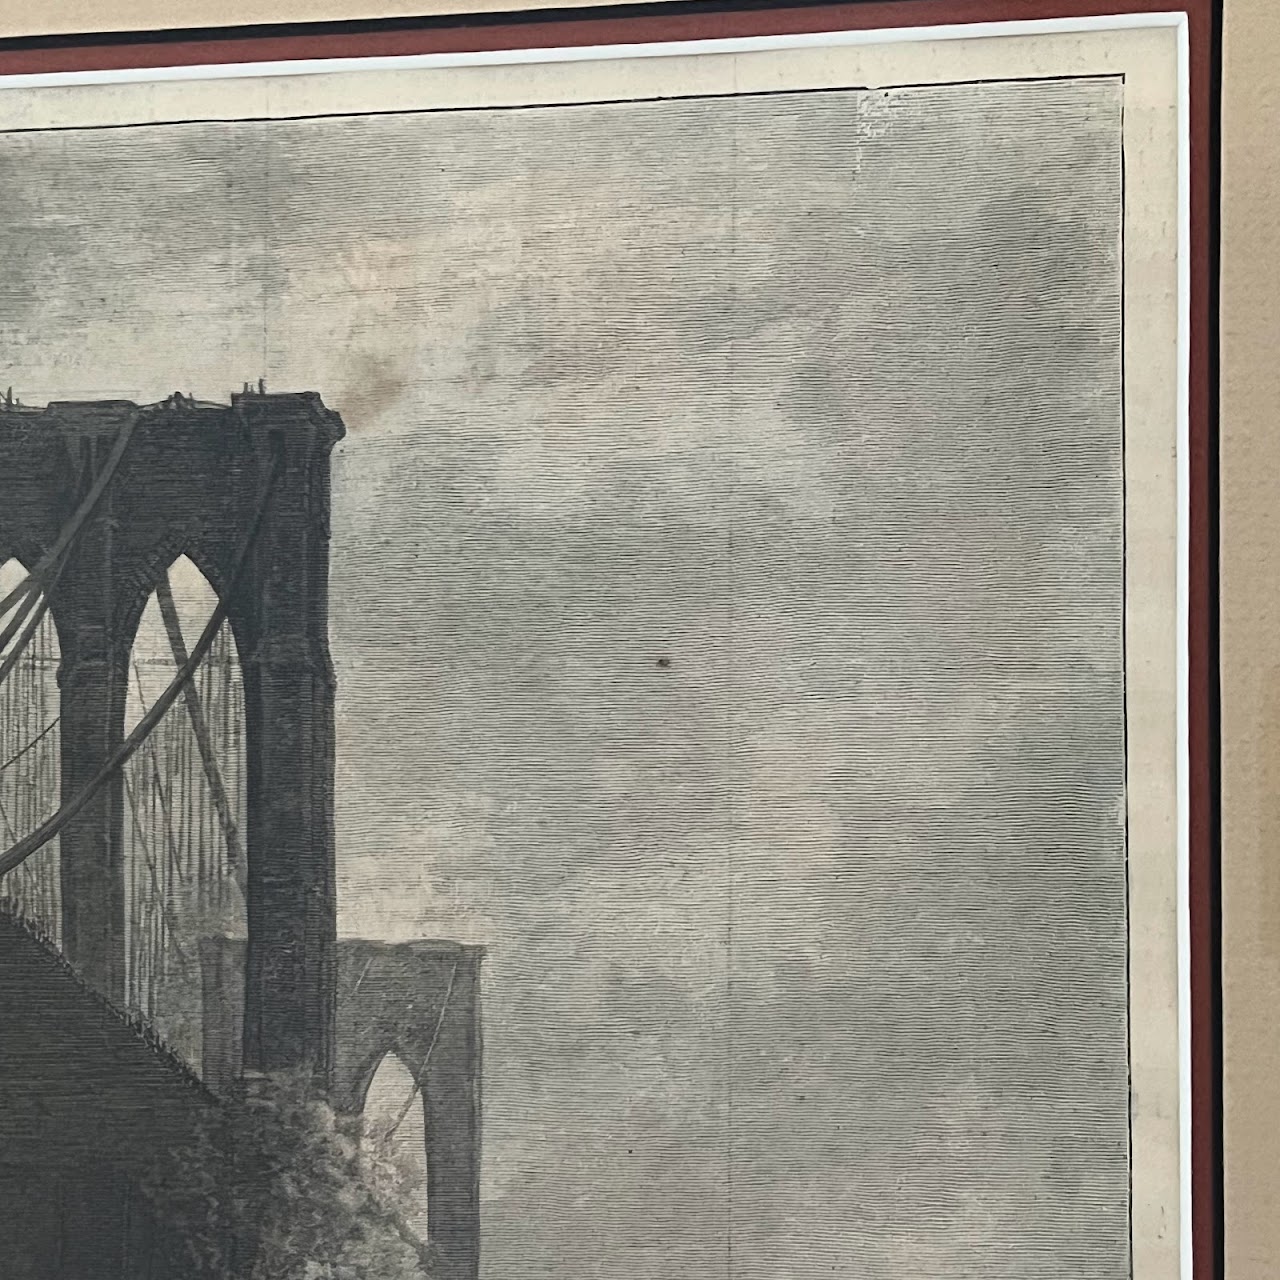 Brooklyn Bridge 19th C. Harper's Weekly Engraved Plate